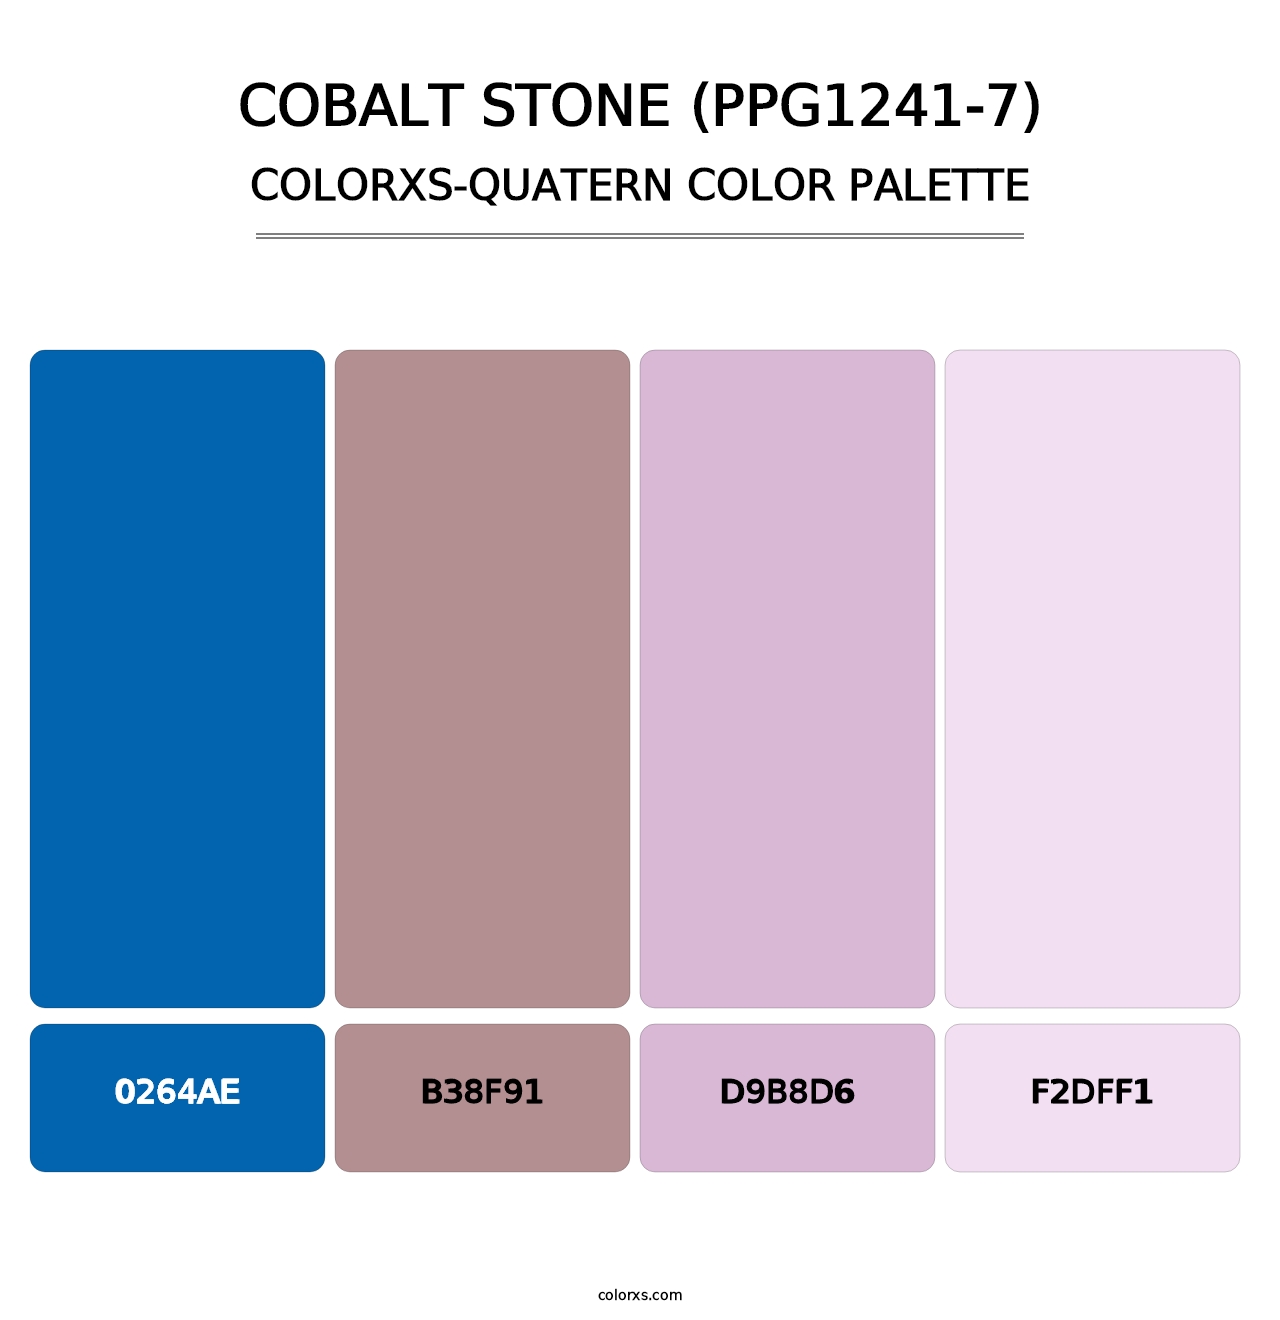 Cobalt Stone (PPG1241-7) - Colorxs Quatern Palette